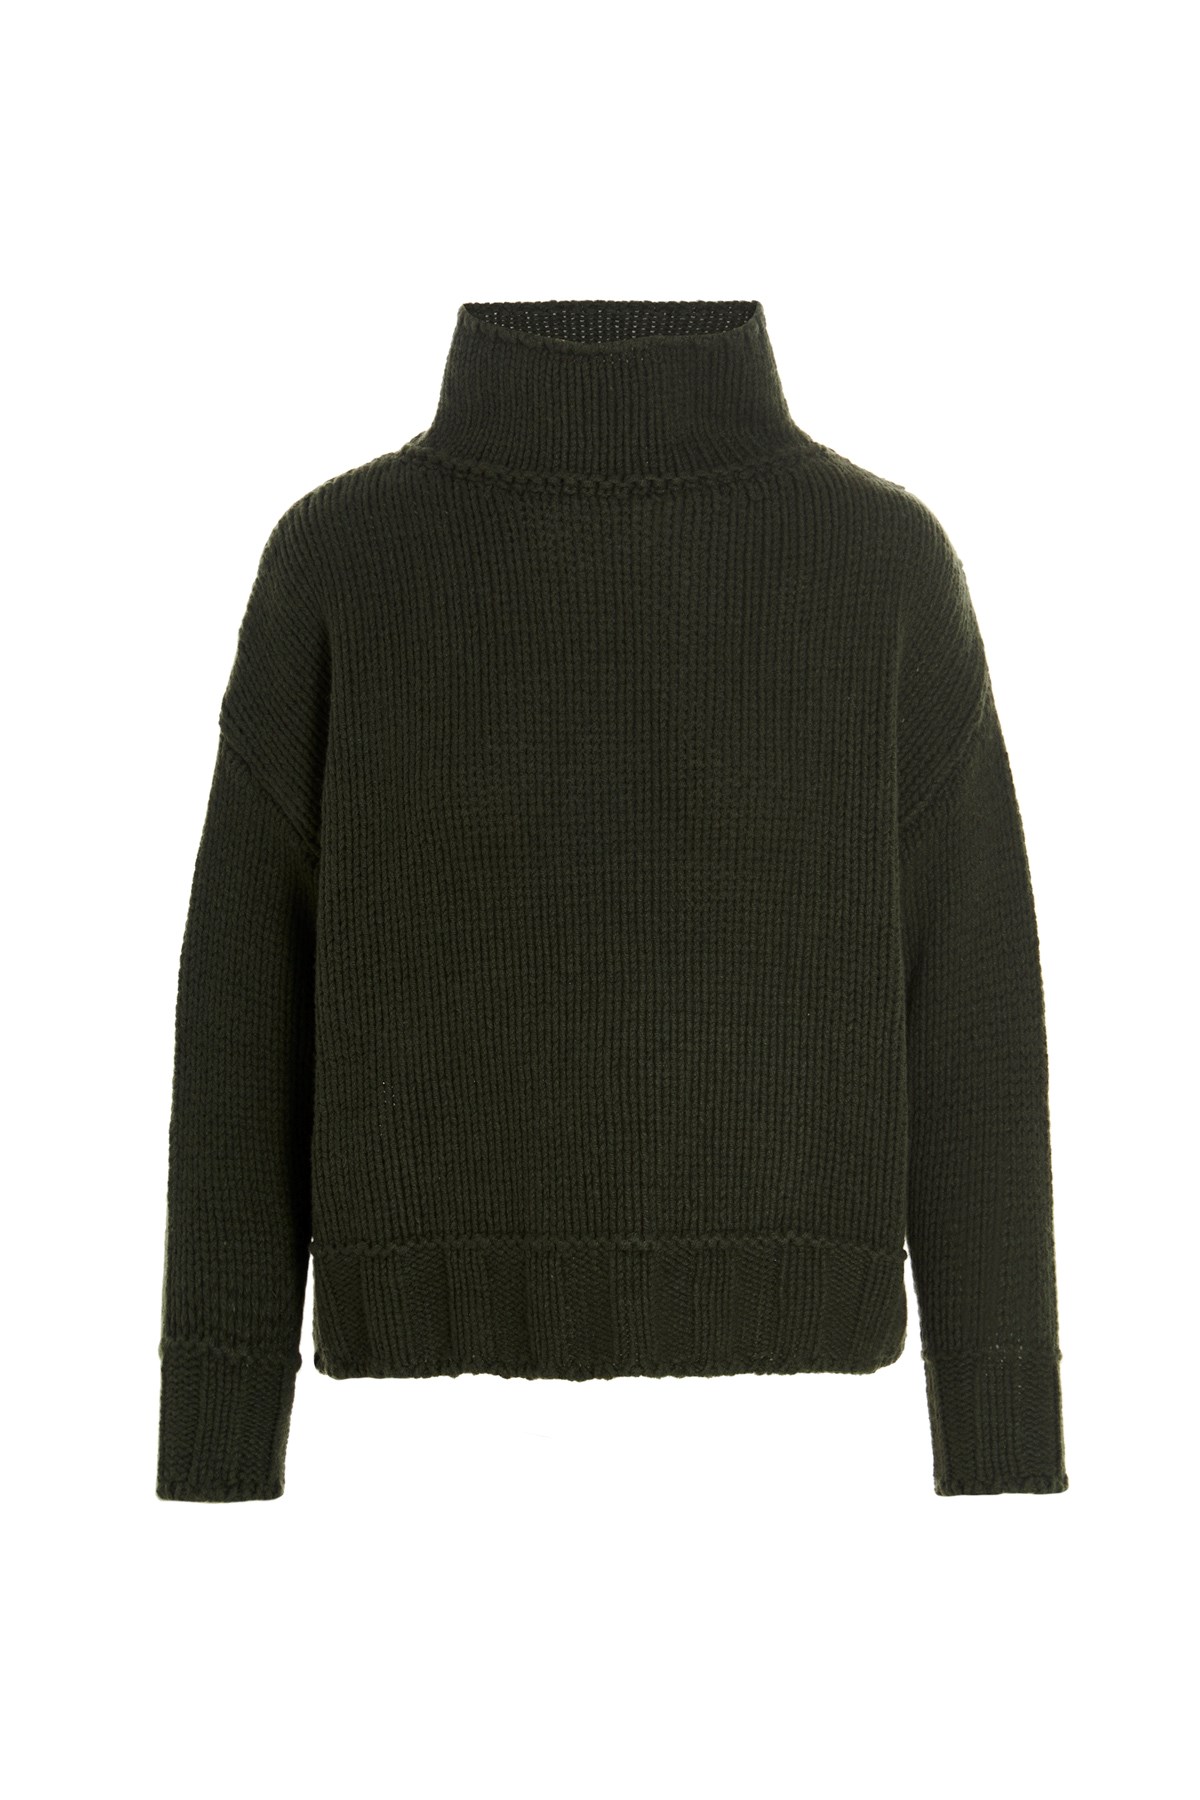 SAVERIO PALATELLA Cashmere Turtleneck Wool Sweater.